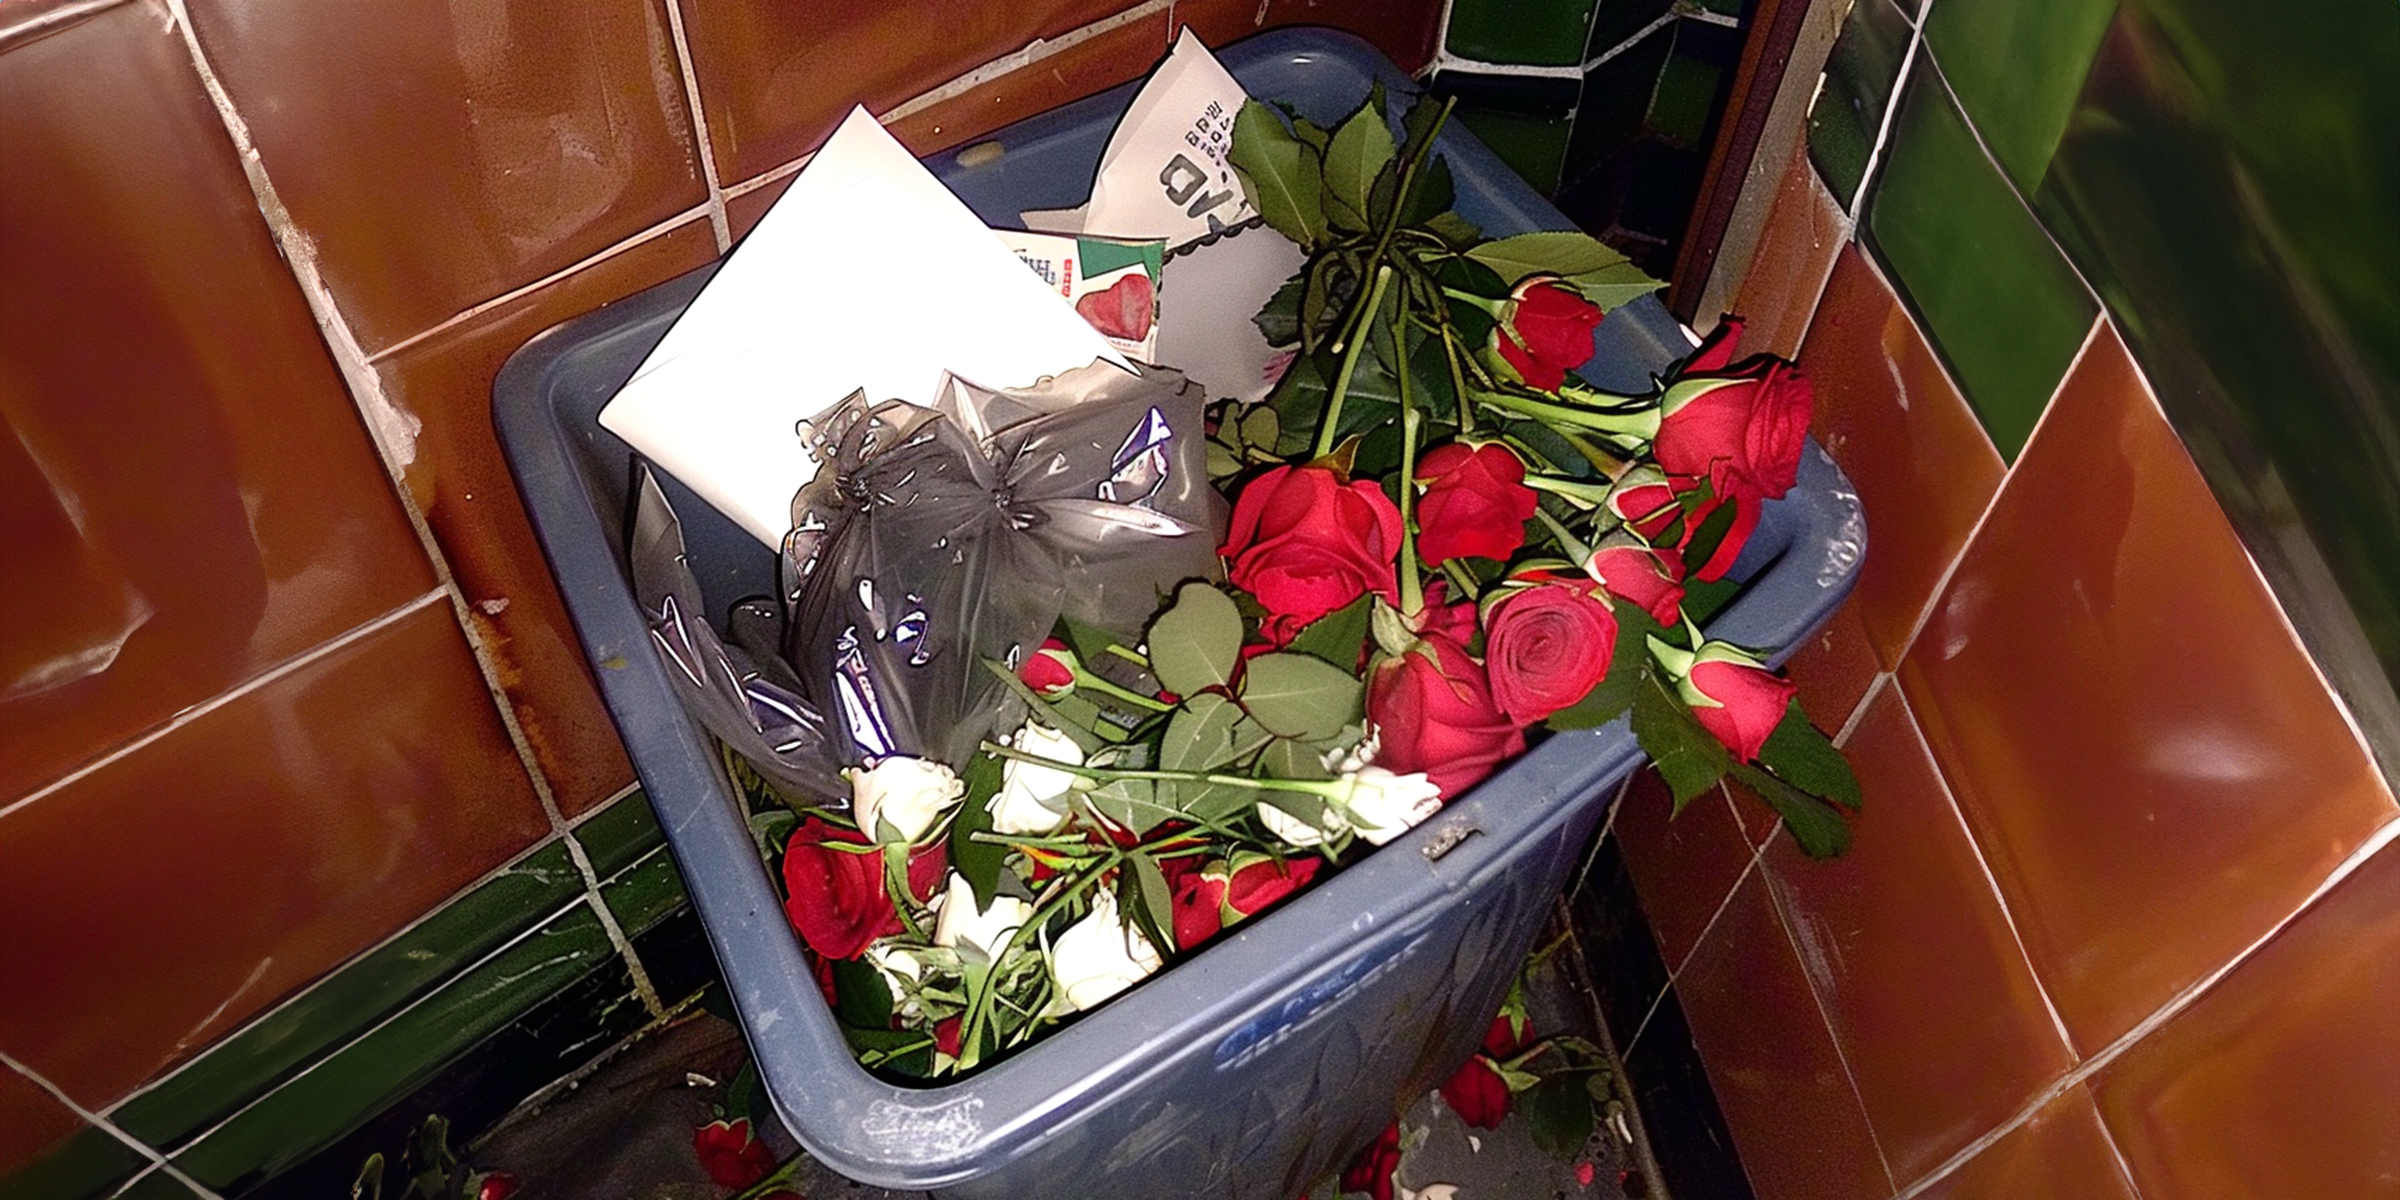 Des roses dans une poubelle | Source : AmoMama